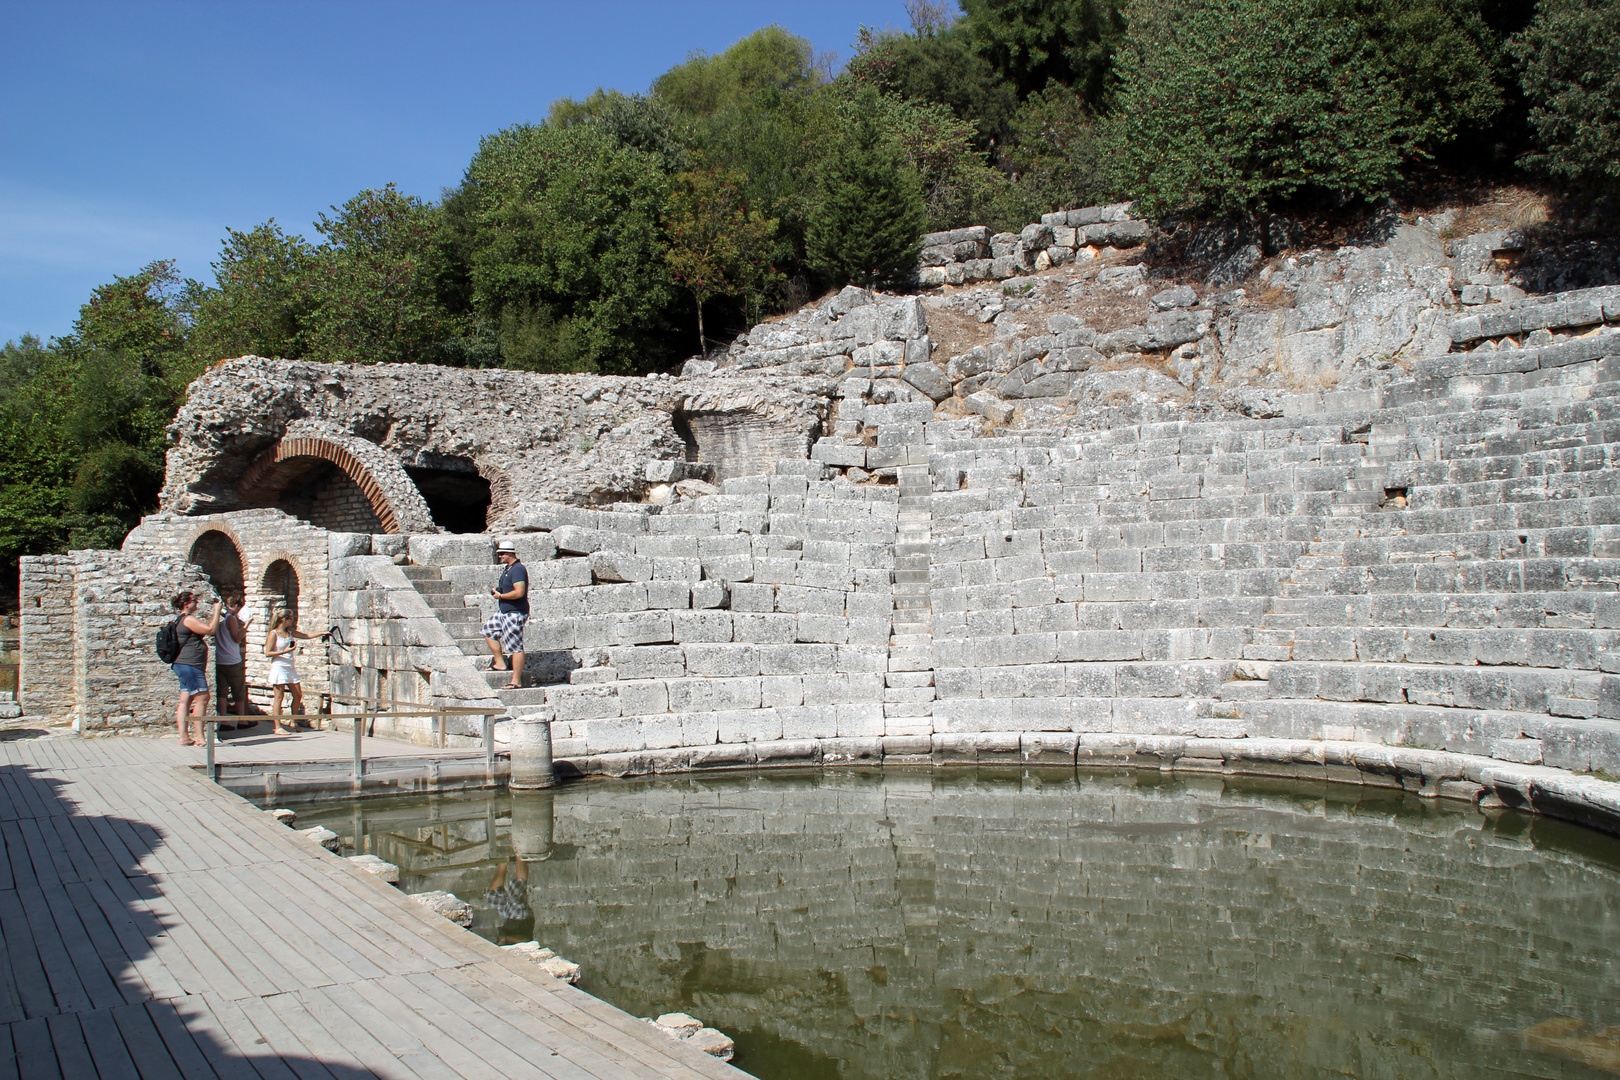 Ausgrabunsgsstätte Butrint in Albanien: Das Amphitheater